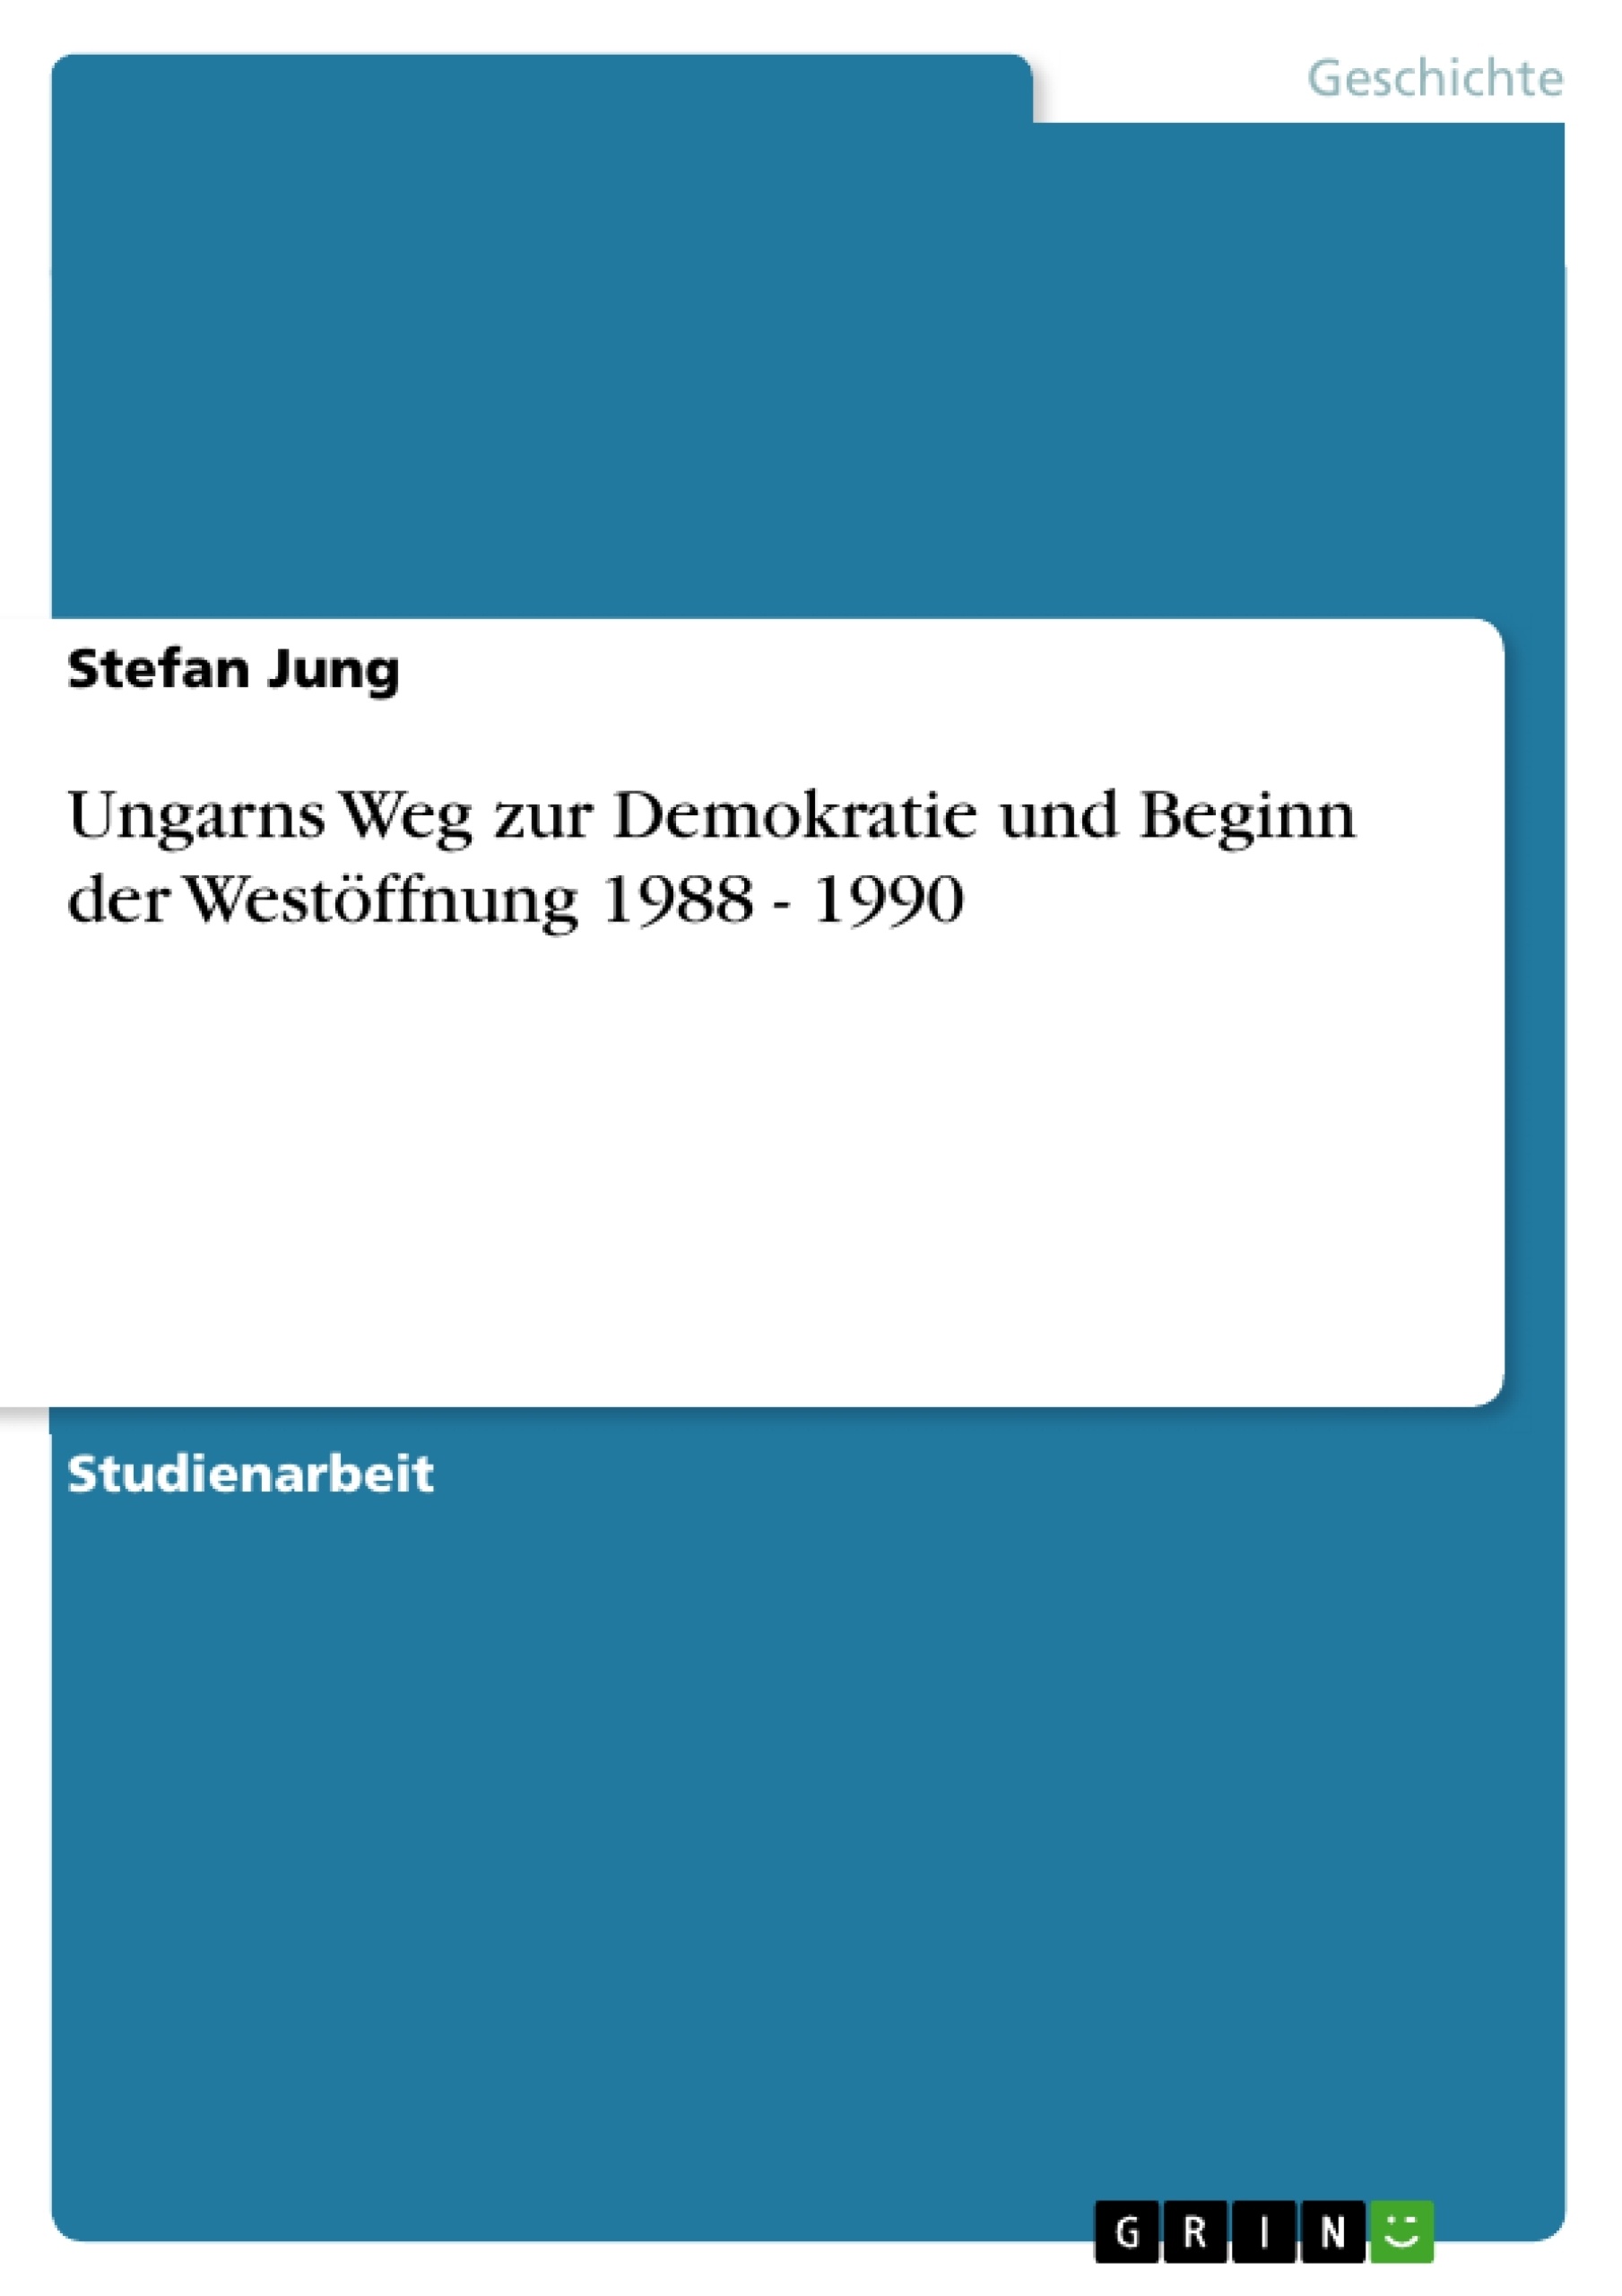 Titel: Ungarns Weg zur Demokratie und Beginn der Westöffnung 1988 - 1990